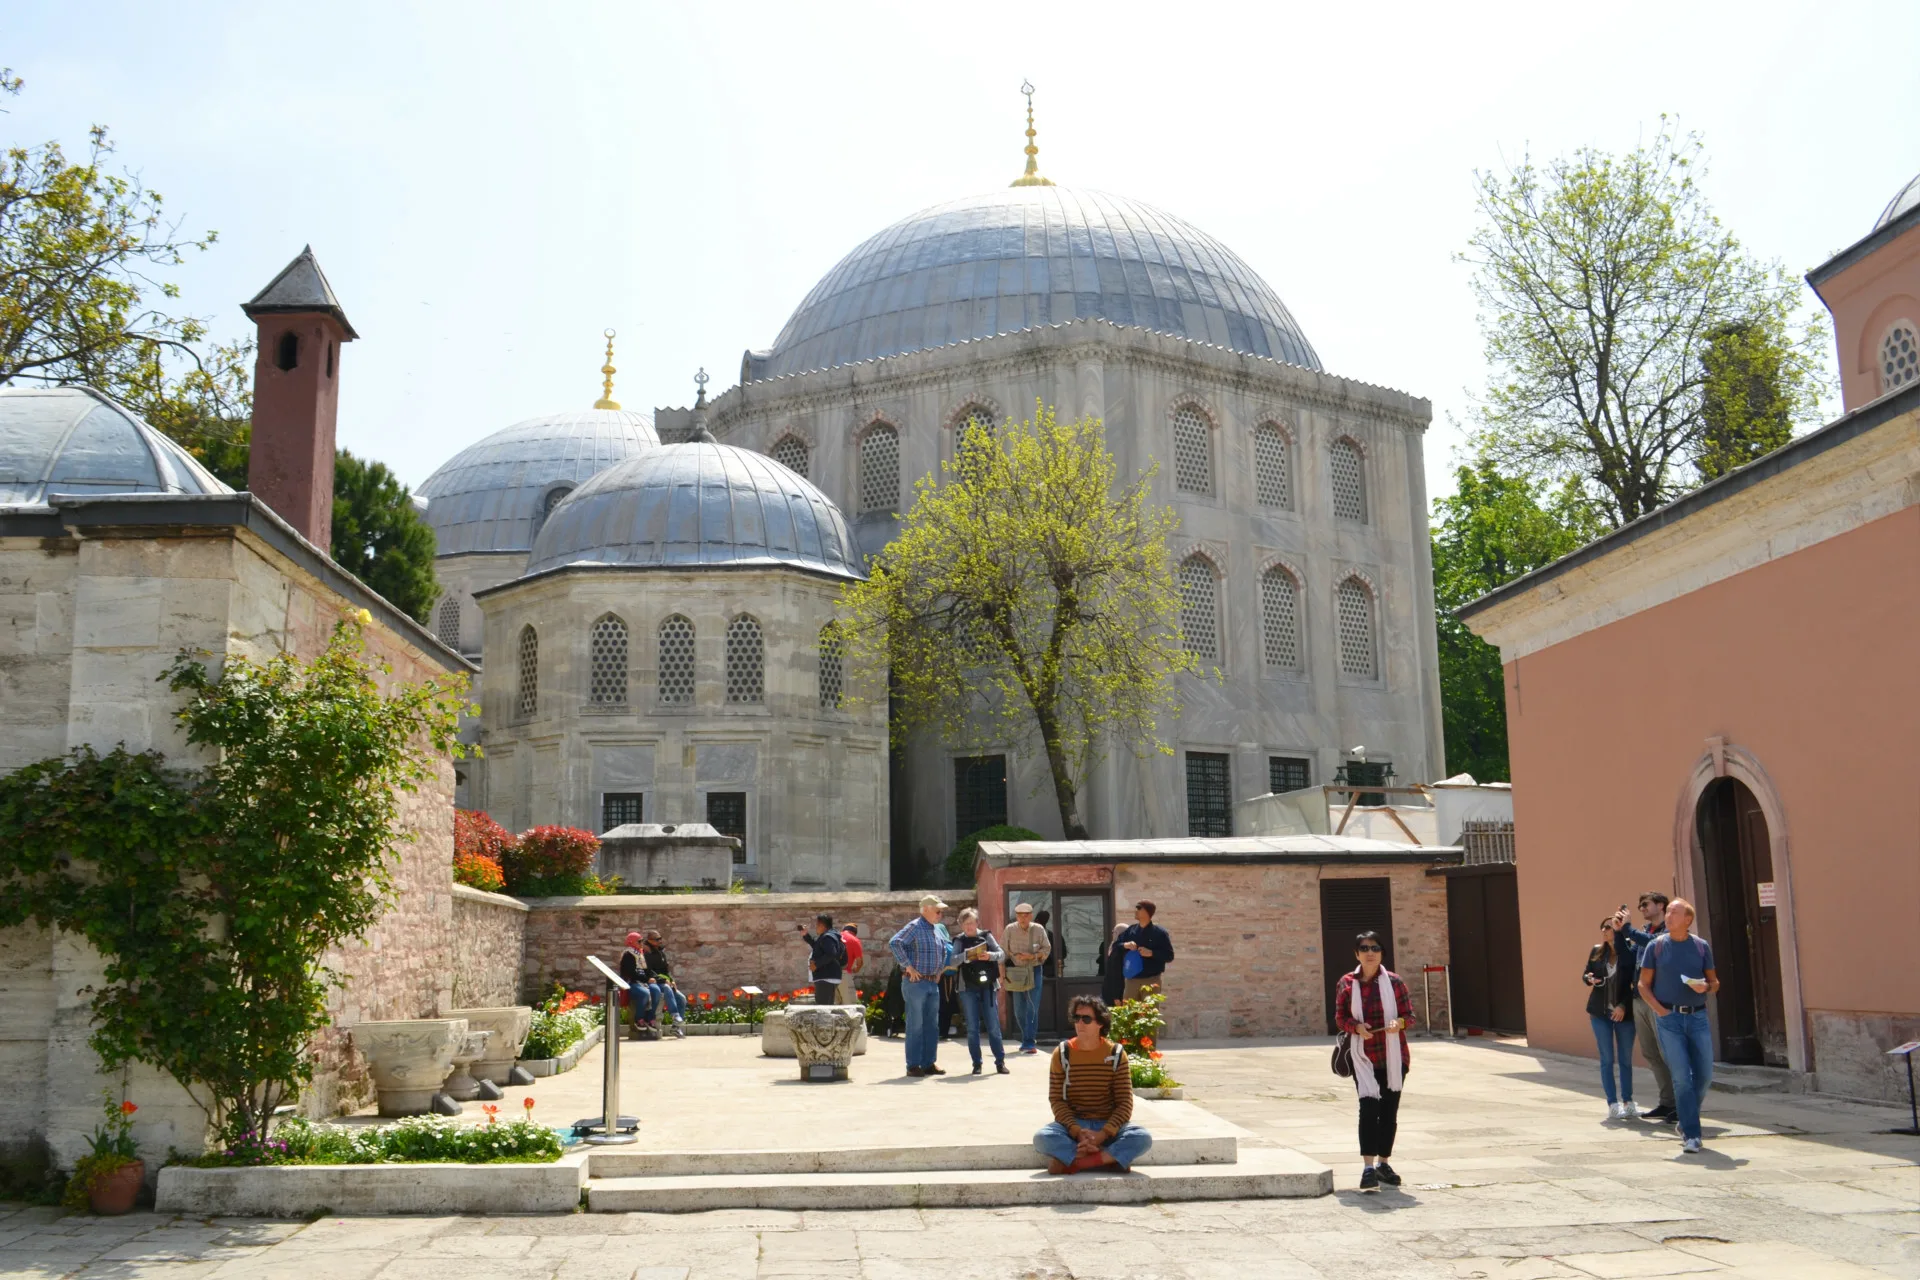 Αξιοθέατα στην Κωνσταντινούπολη. Αγία Σοφία και Μπλε Τζαμί